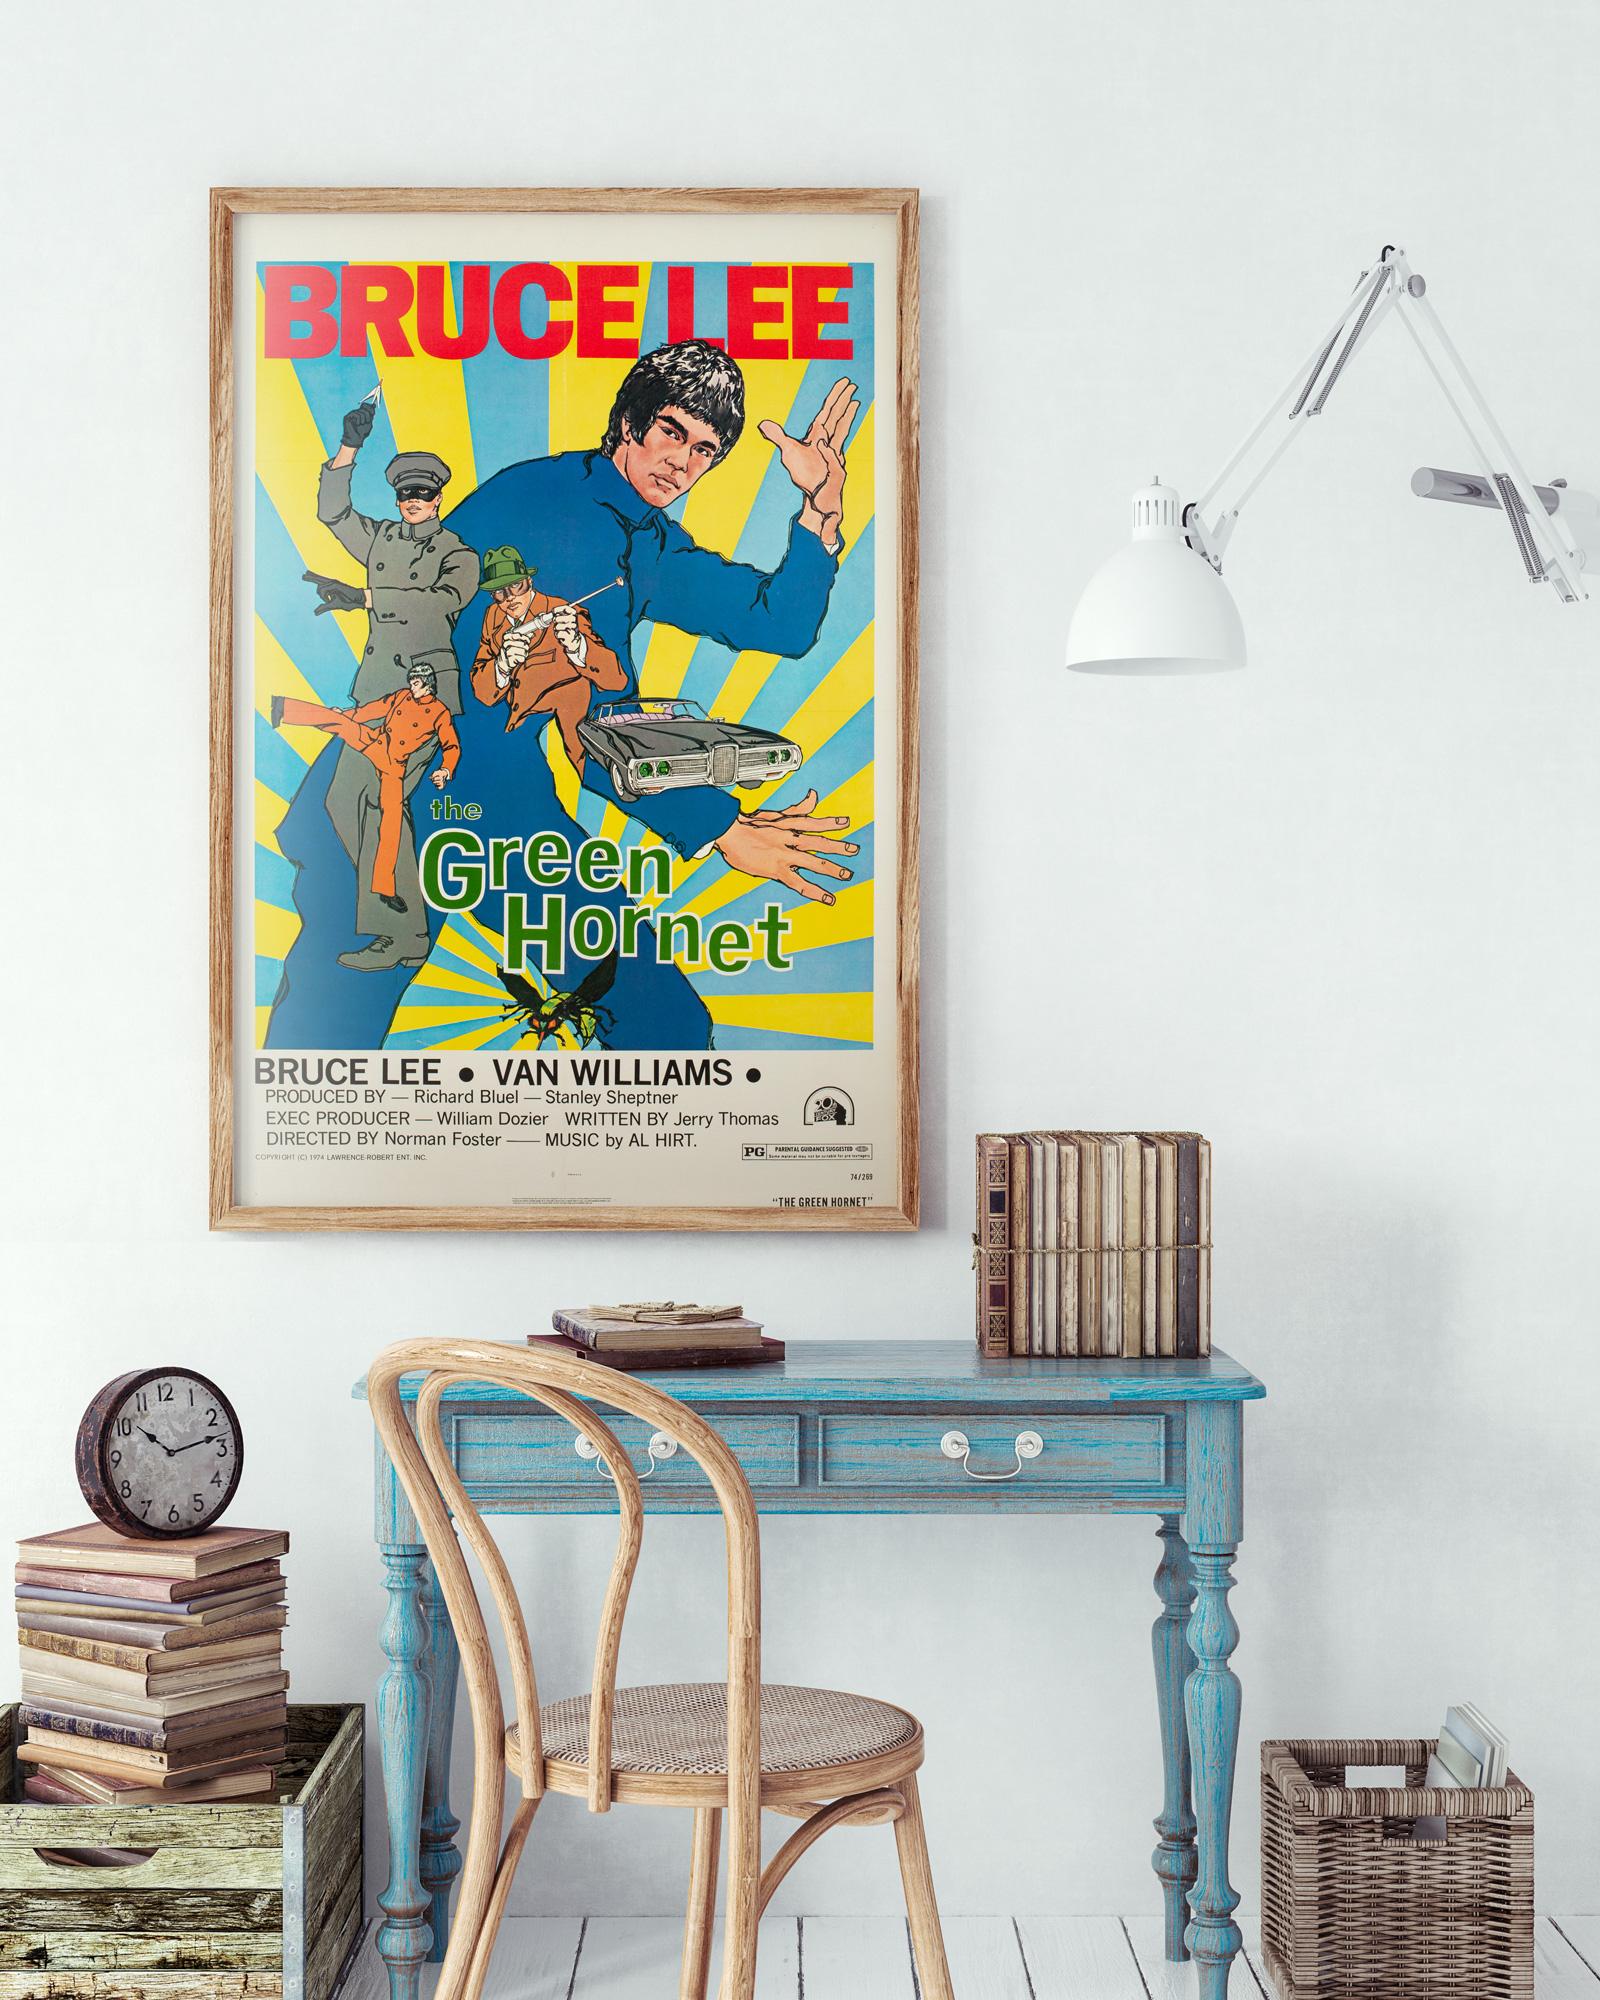 Le frelon vert 1974 US 1 feuille poster de film style titre vert

Fantastique affiche de film originale américaine pour le ré-emballage de 1974 de la série télévisée Le frelon vert, avec le seul et unique Bruce Lee dans le rôle de Kato. Dans le